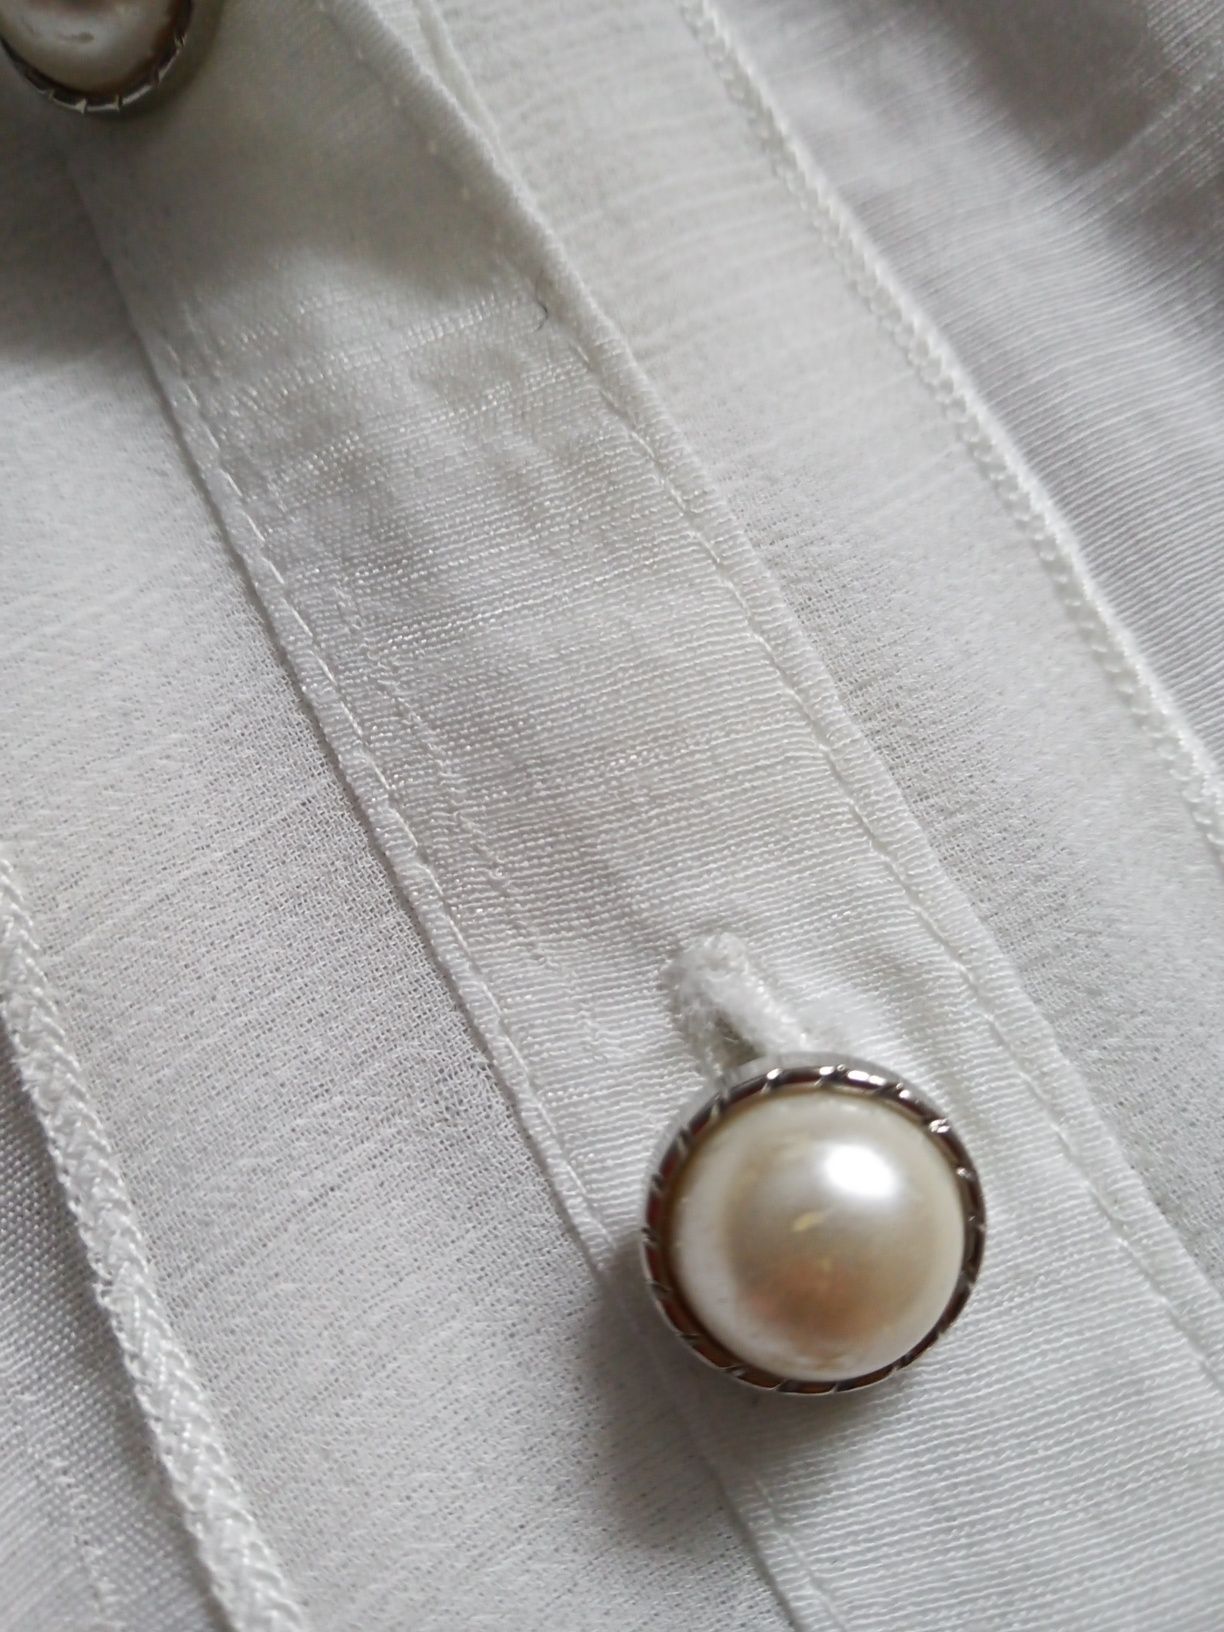 Bluzka koszula damska M 38 perły cekiny nietuzinkowa zwiewna